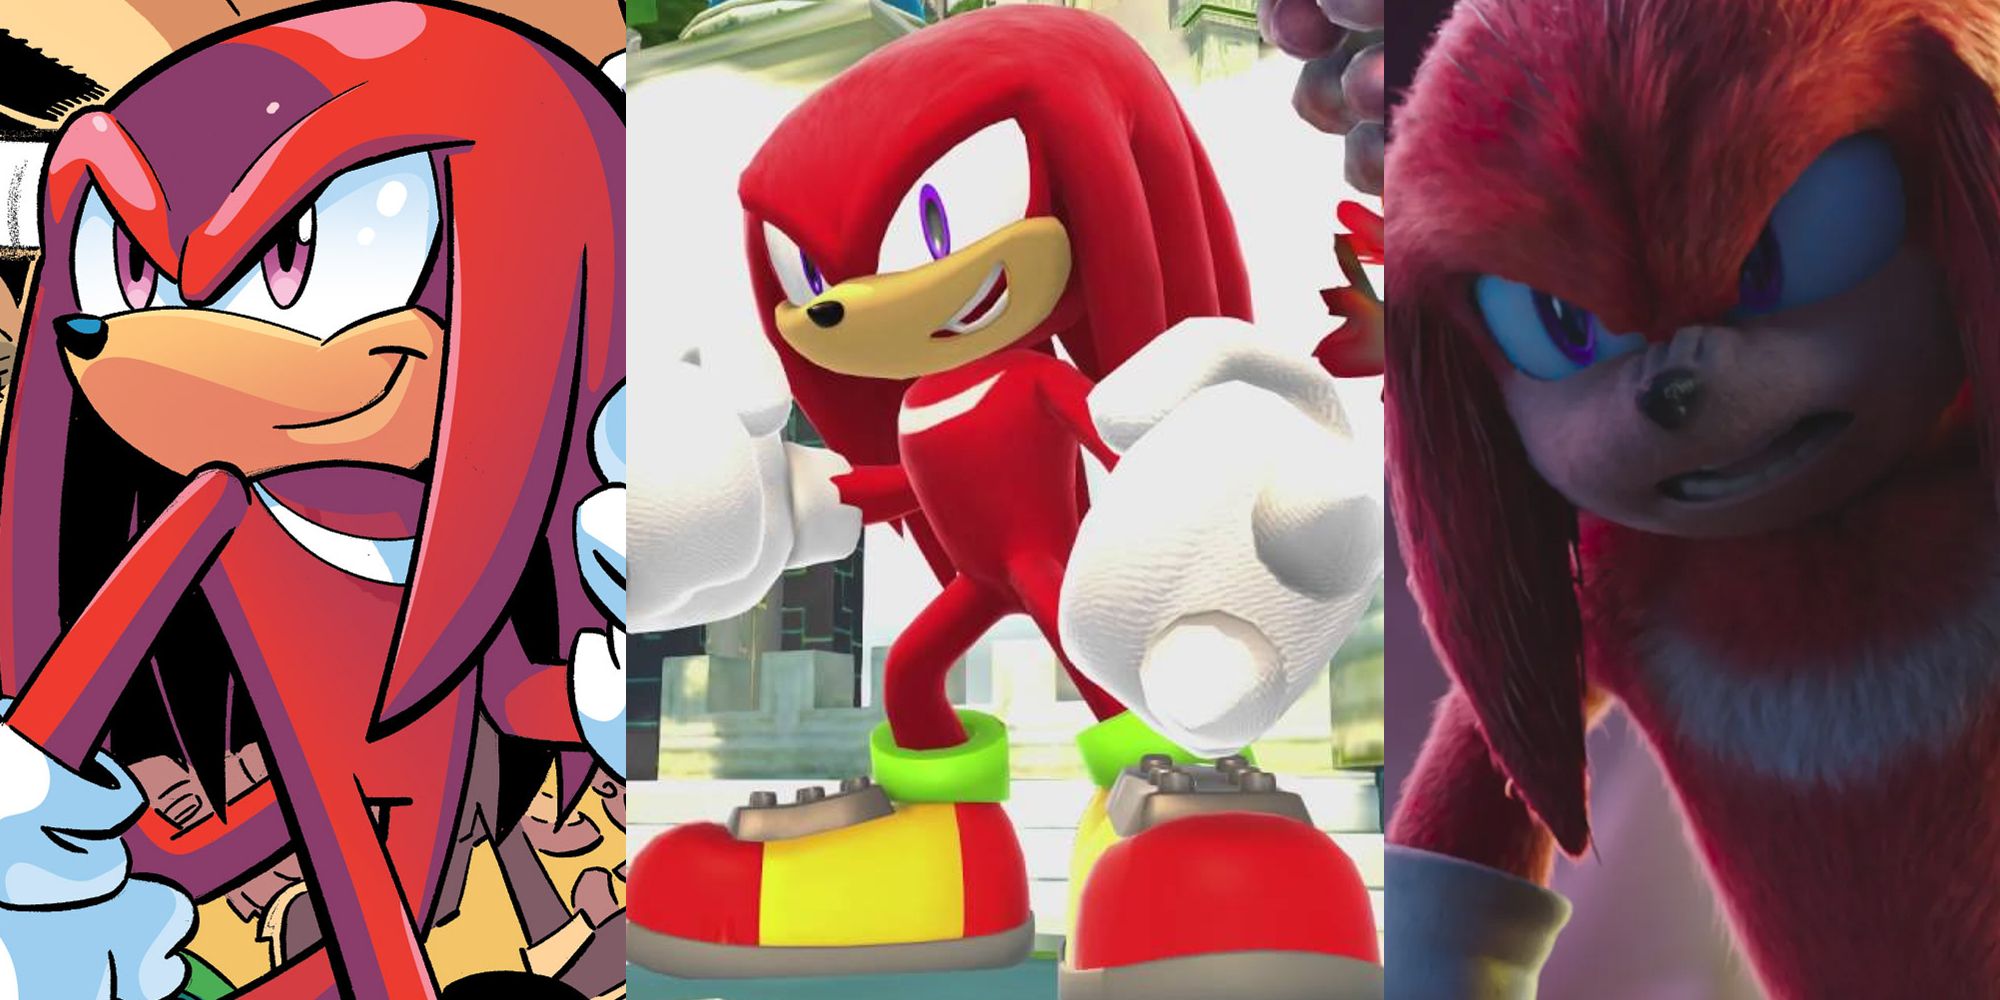 Sonic the sündisznó: a legbátrabb dolgok a csuklók tettek